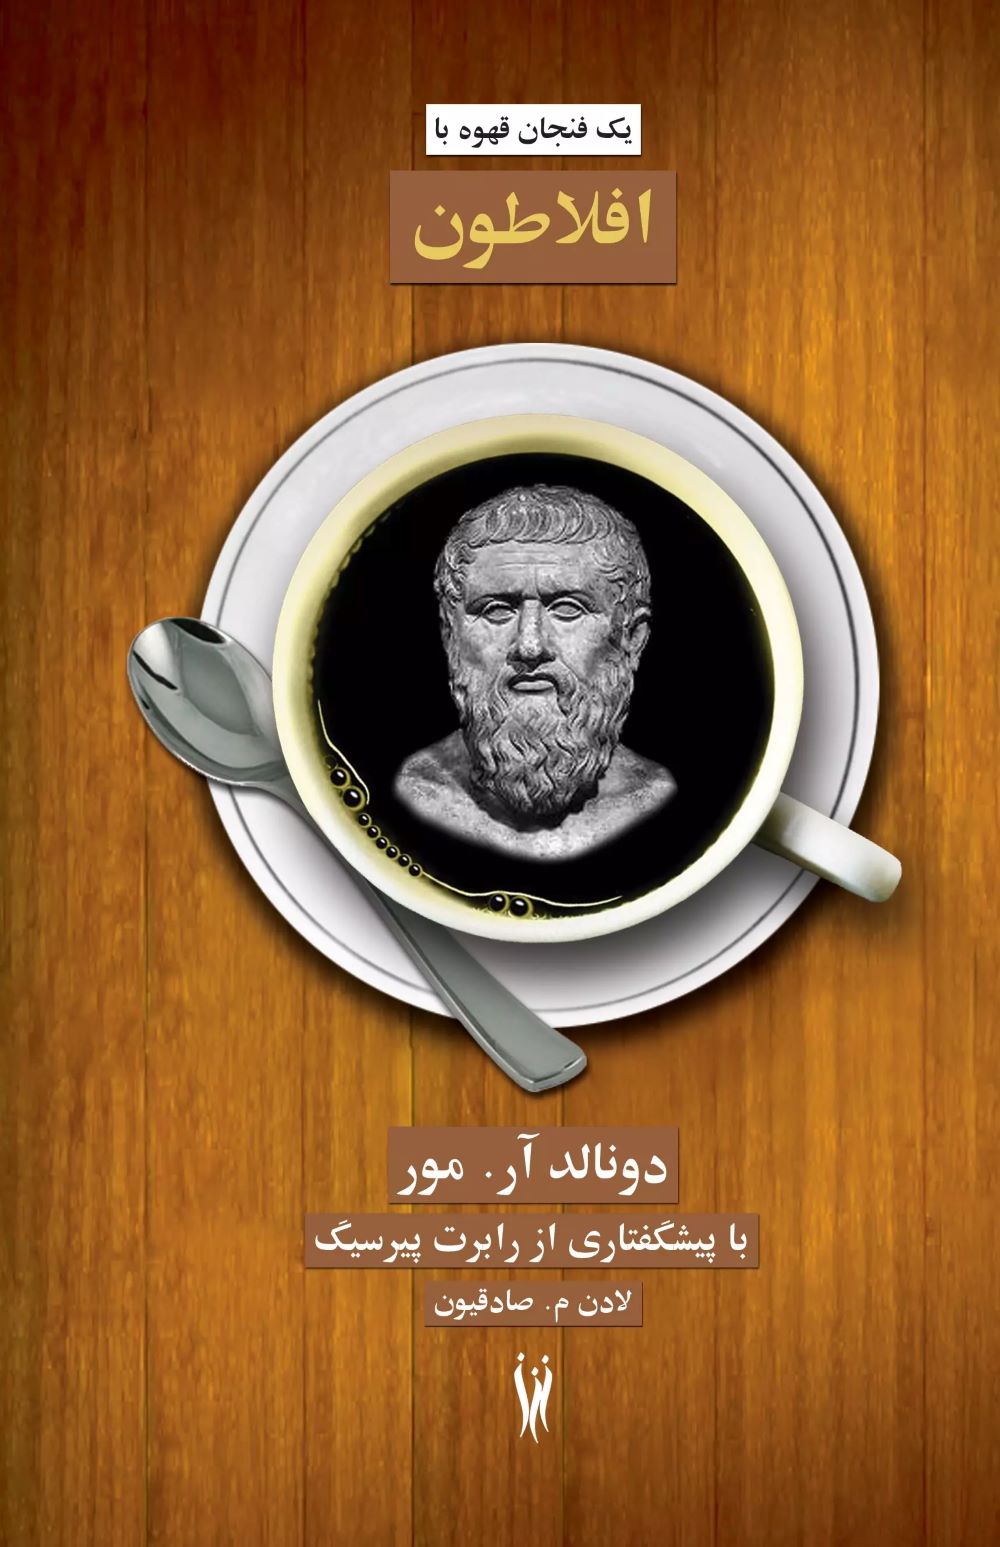  کتاب یک فنجان قهوه با افلاطون